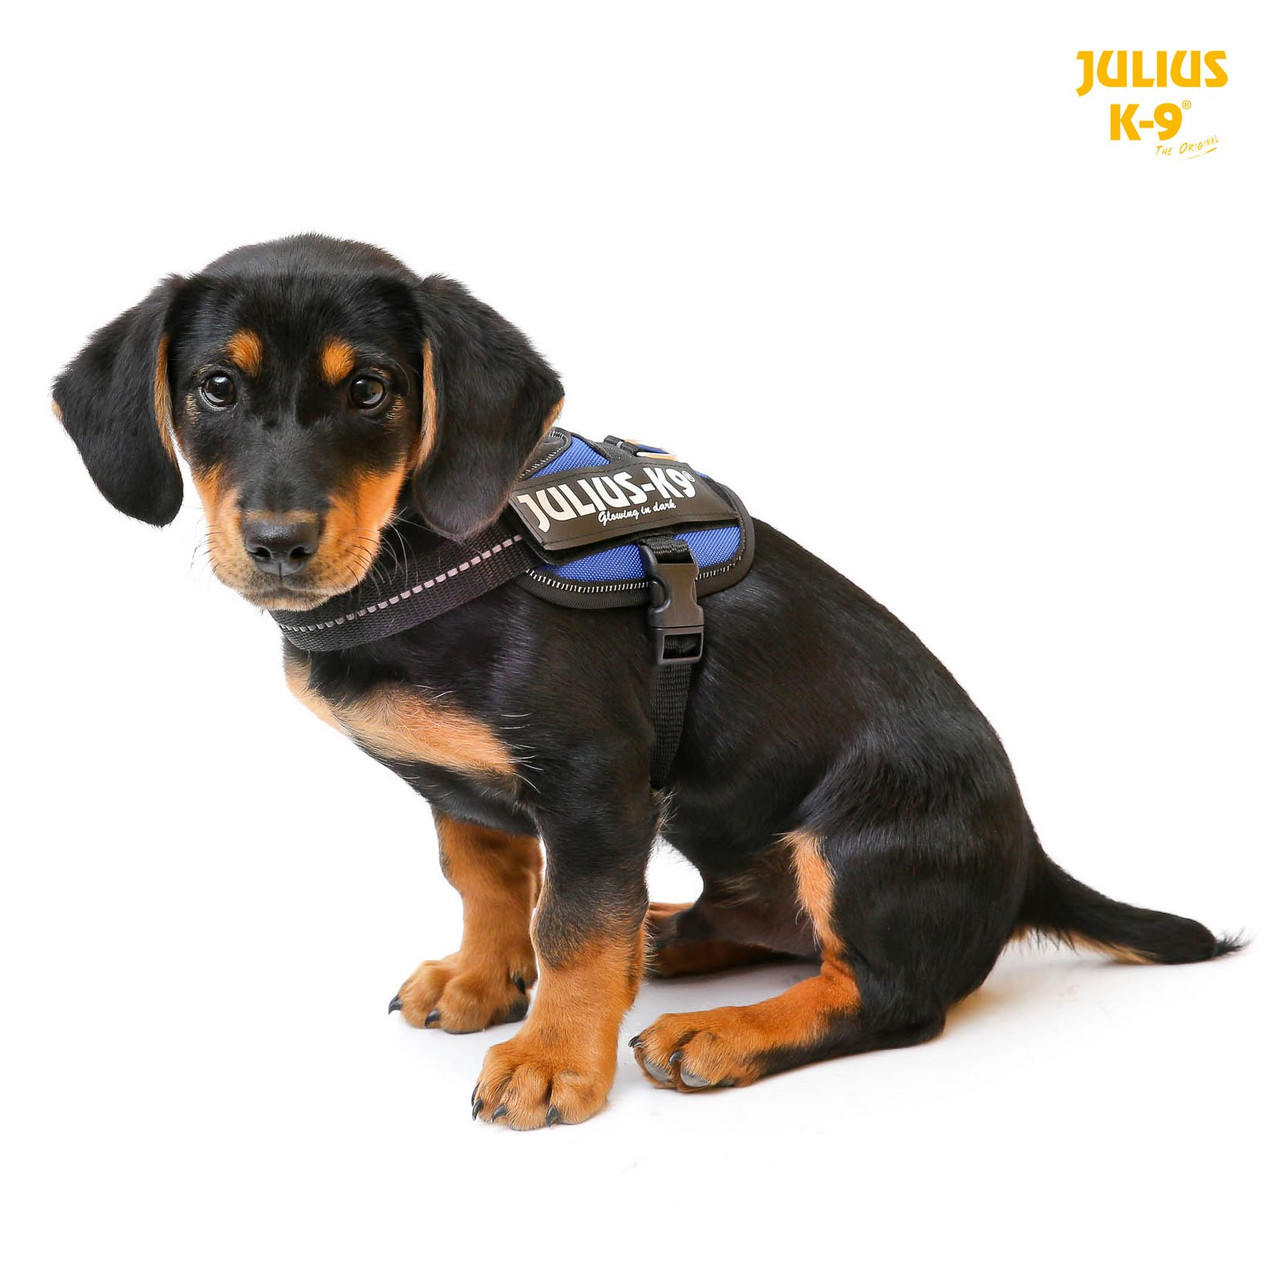 JULIUS-K9, 16IDC-PM, IDC Powerharness, dog harness, Size: Mini, Black